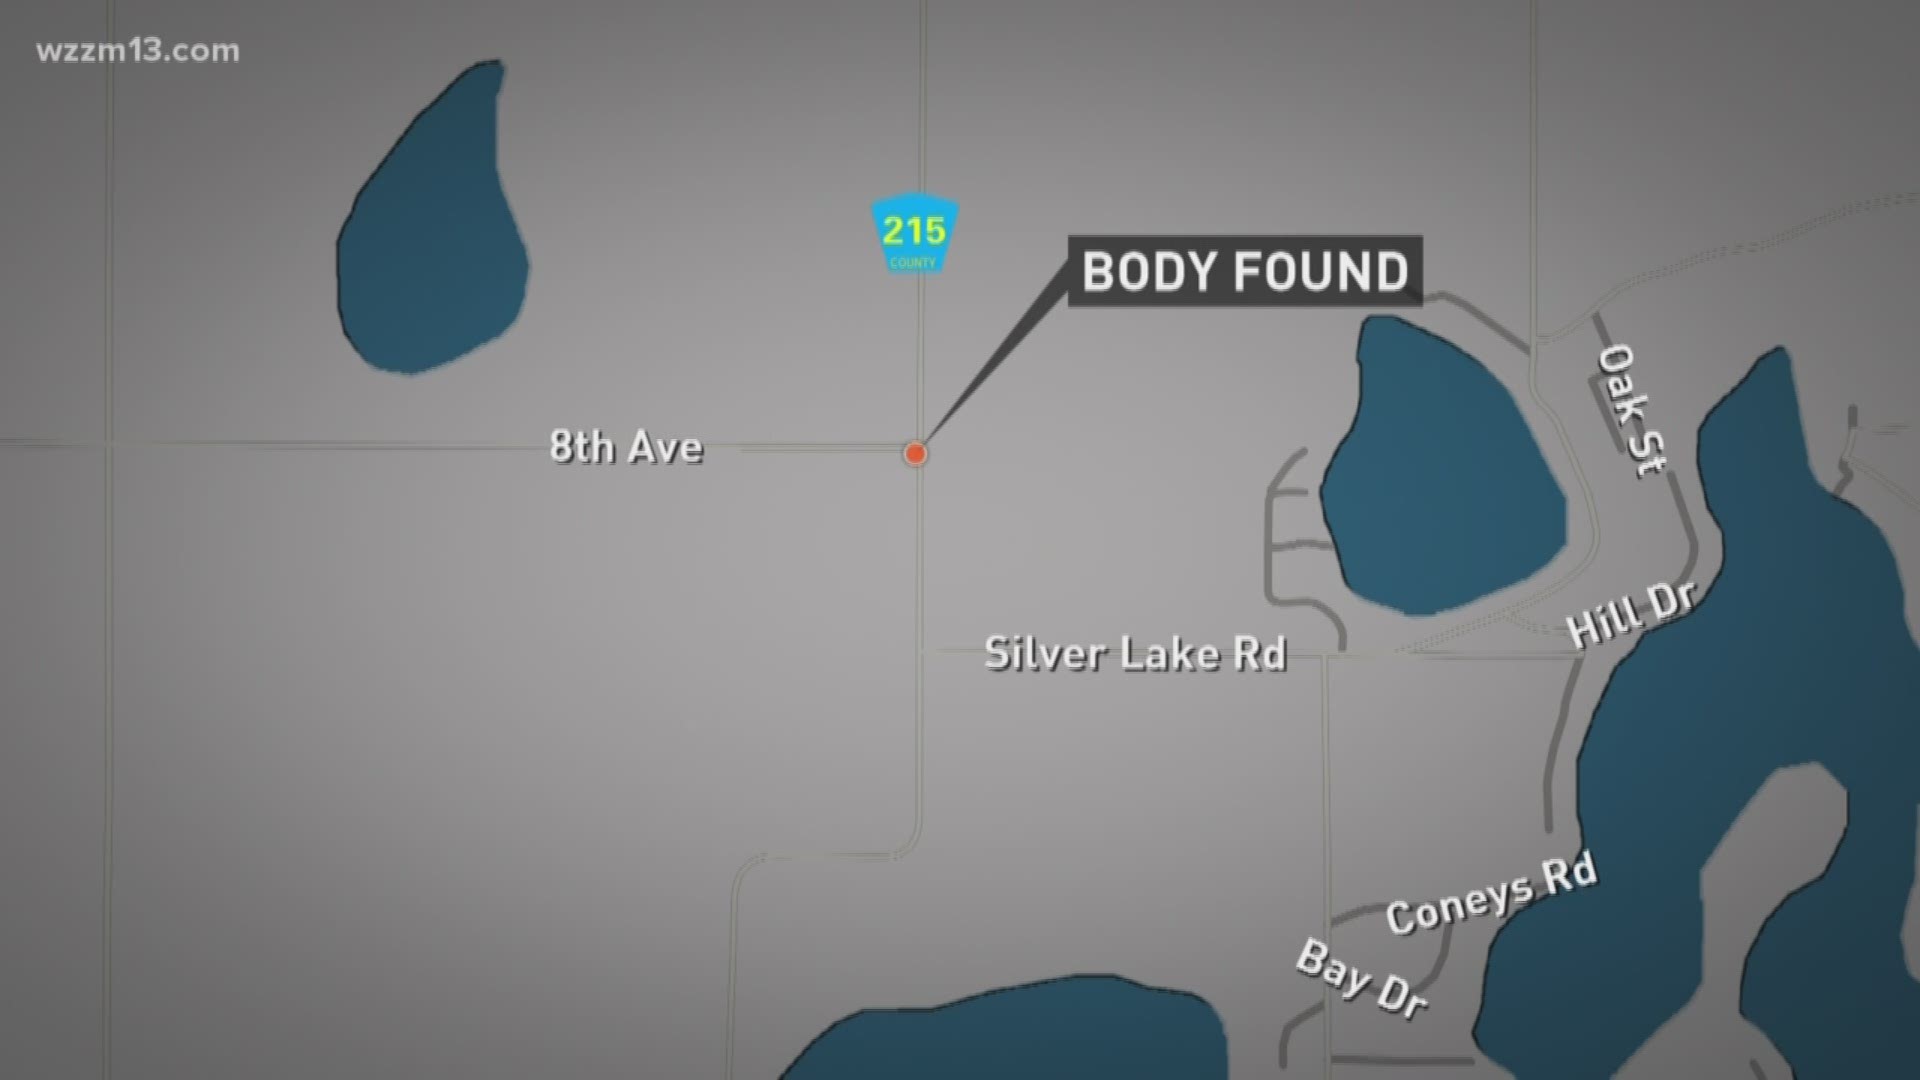 Florida man found dead in car stuck in Van Buren County field